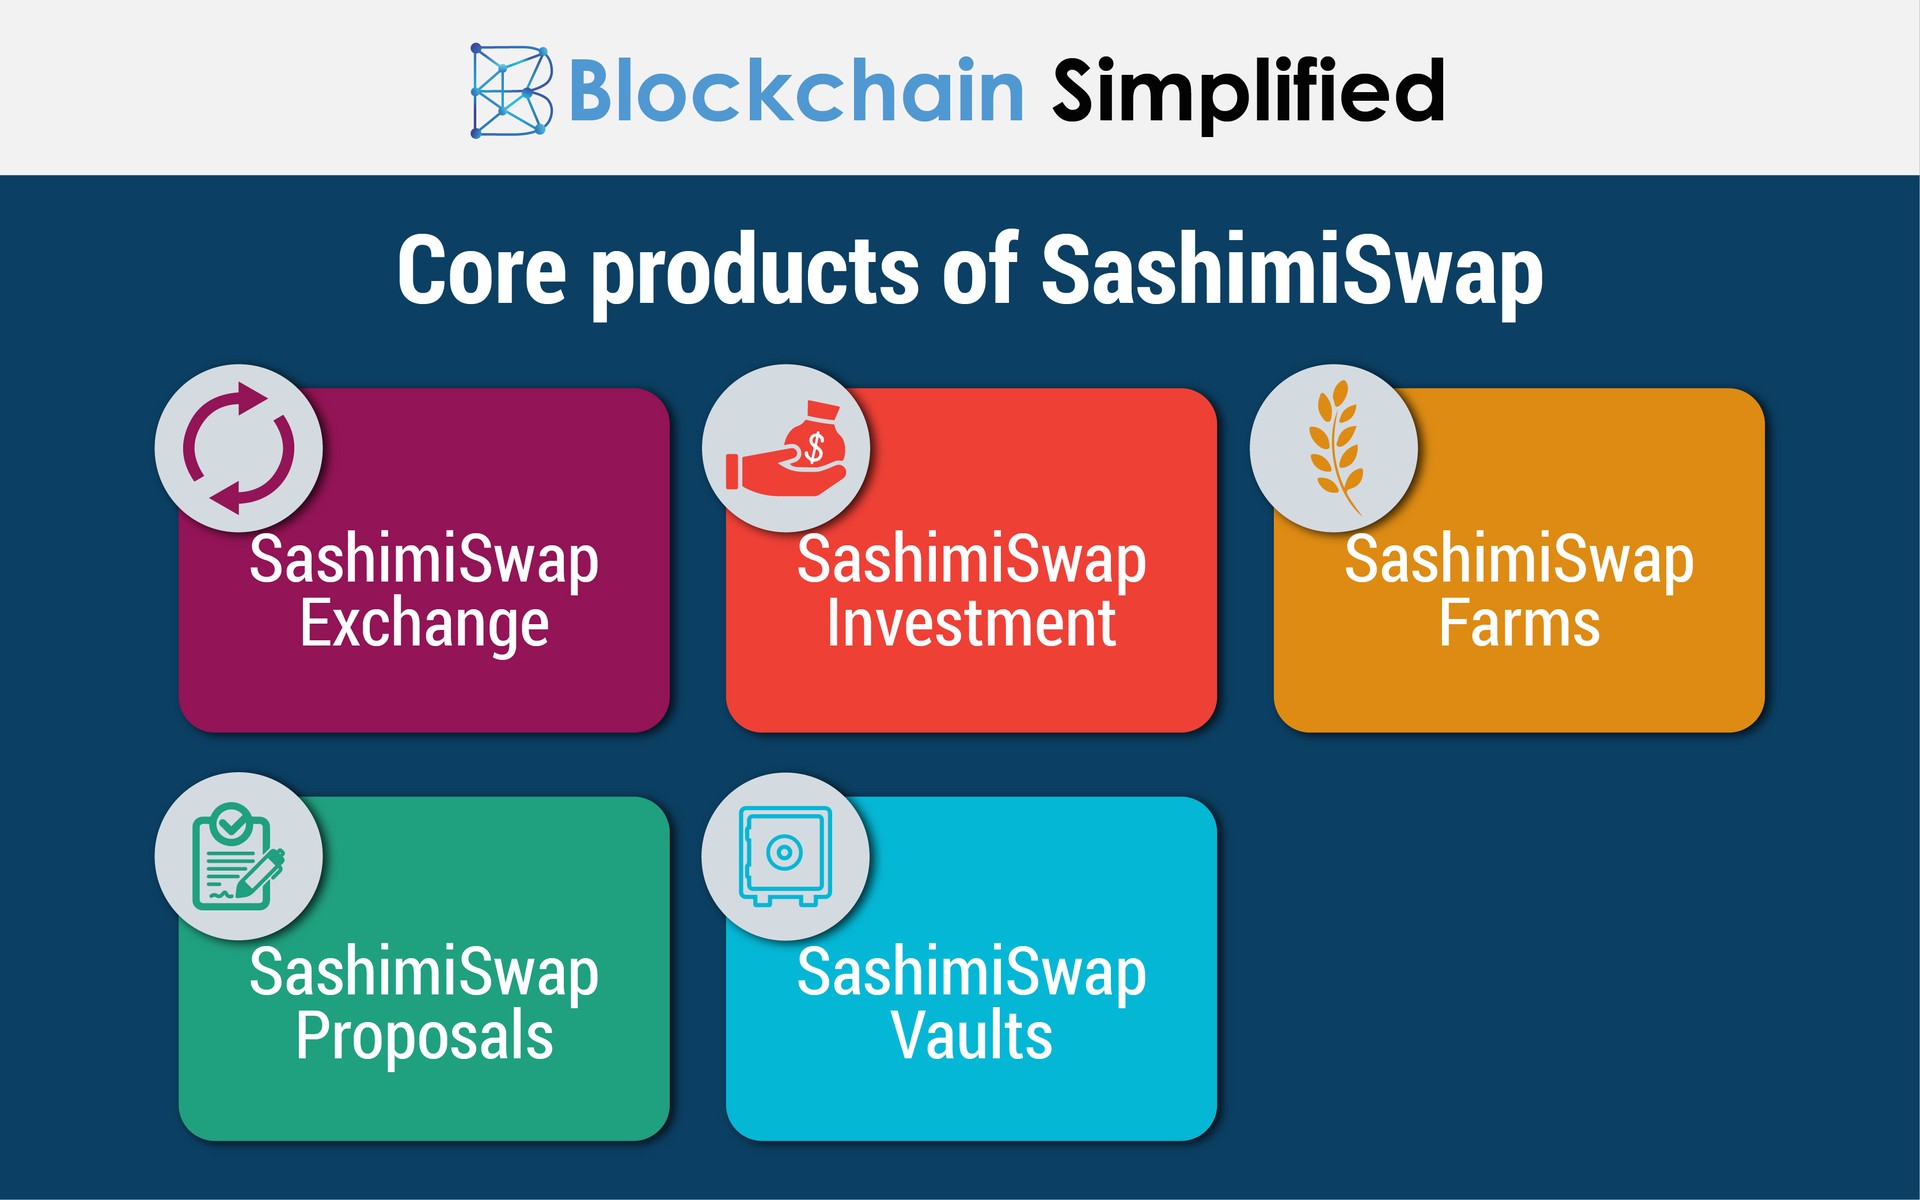 sashimiswap core products